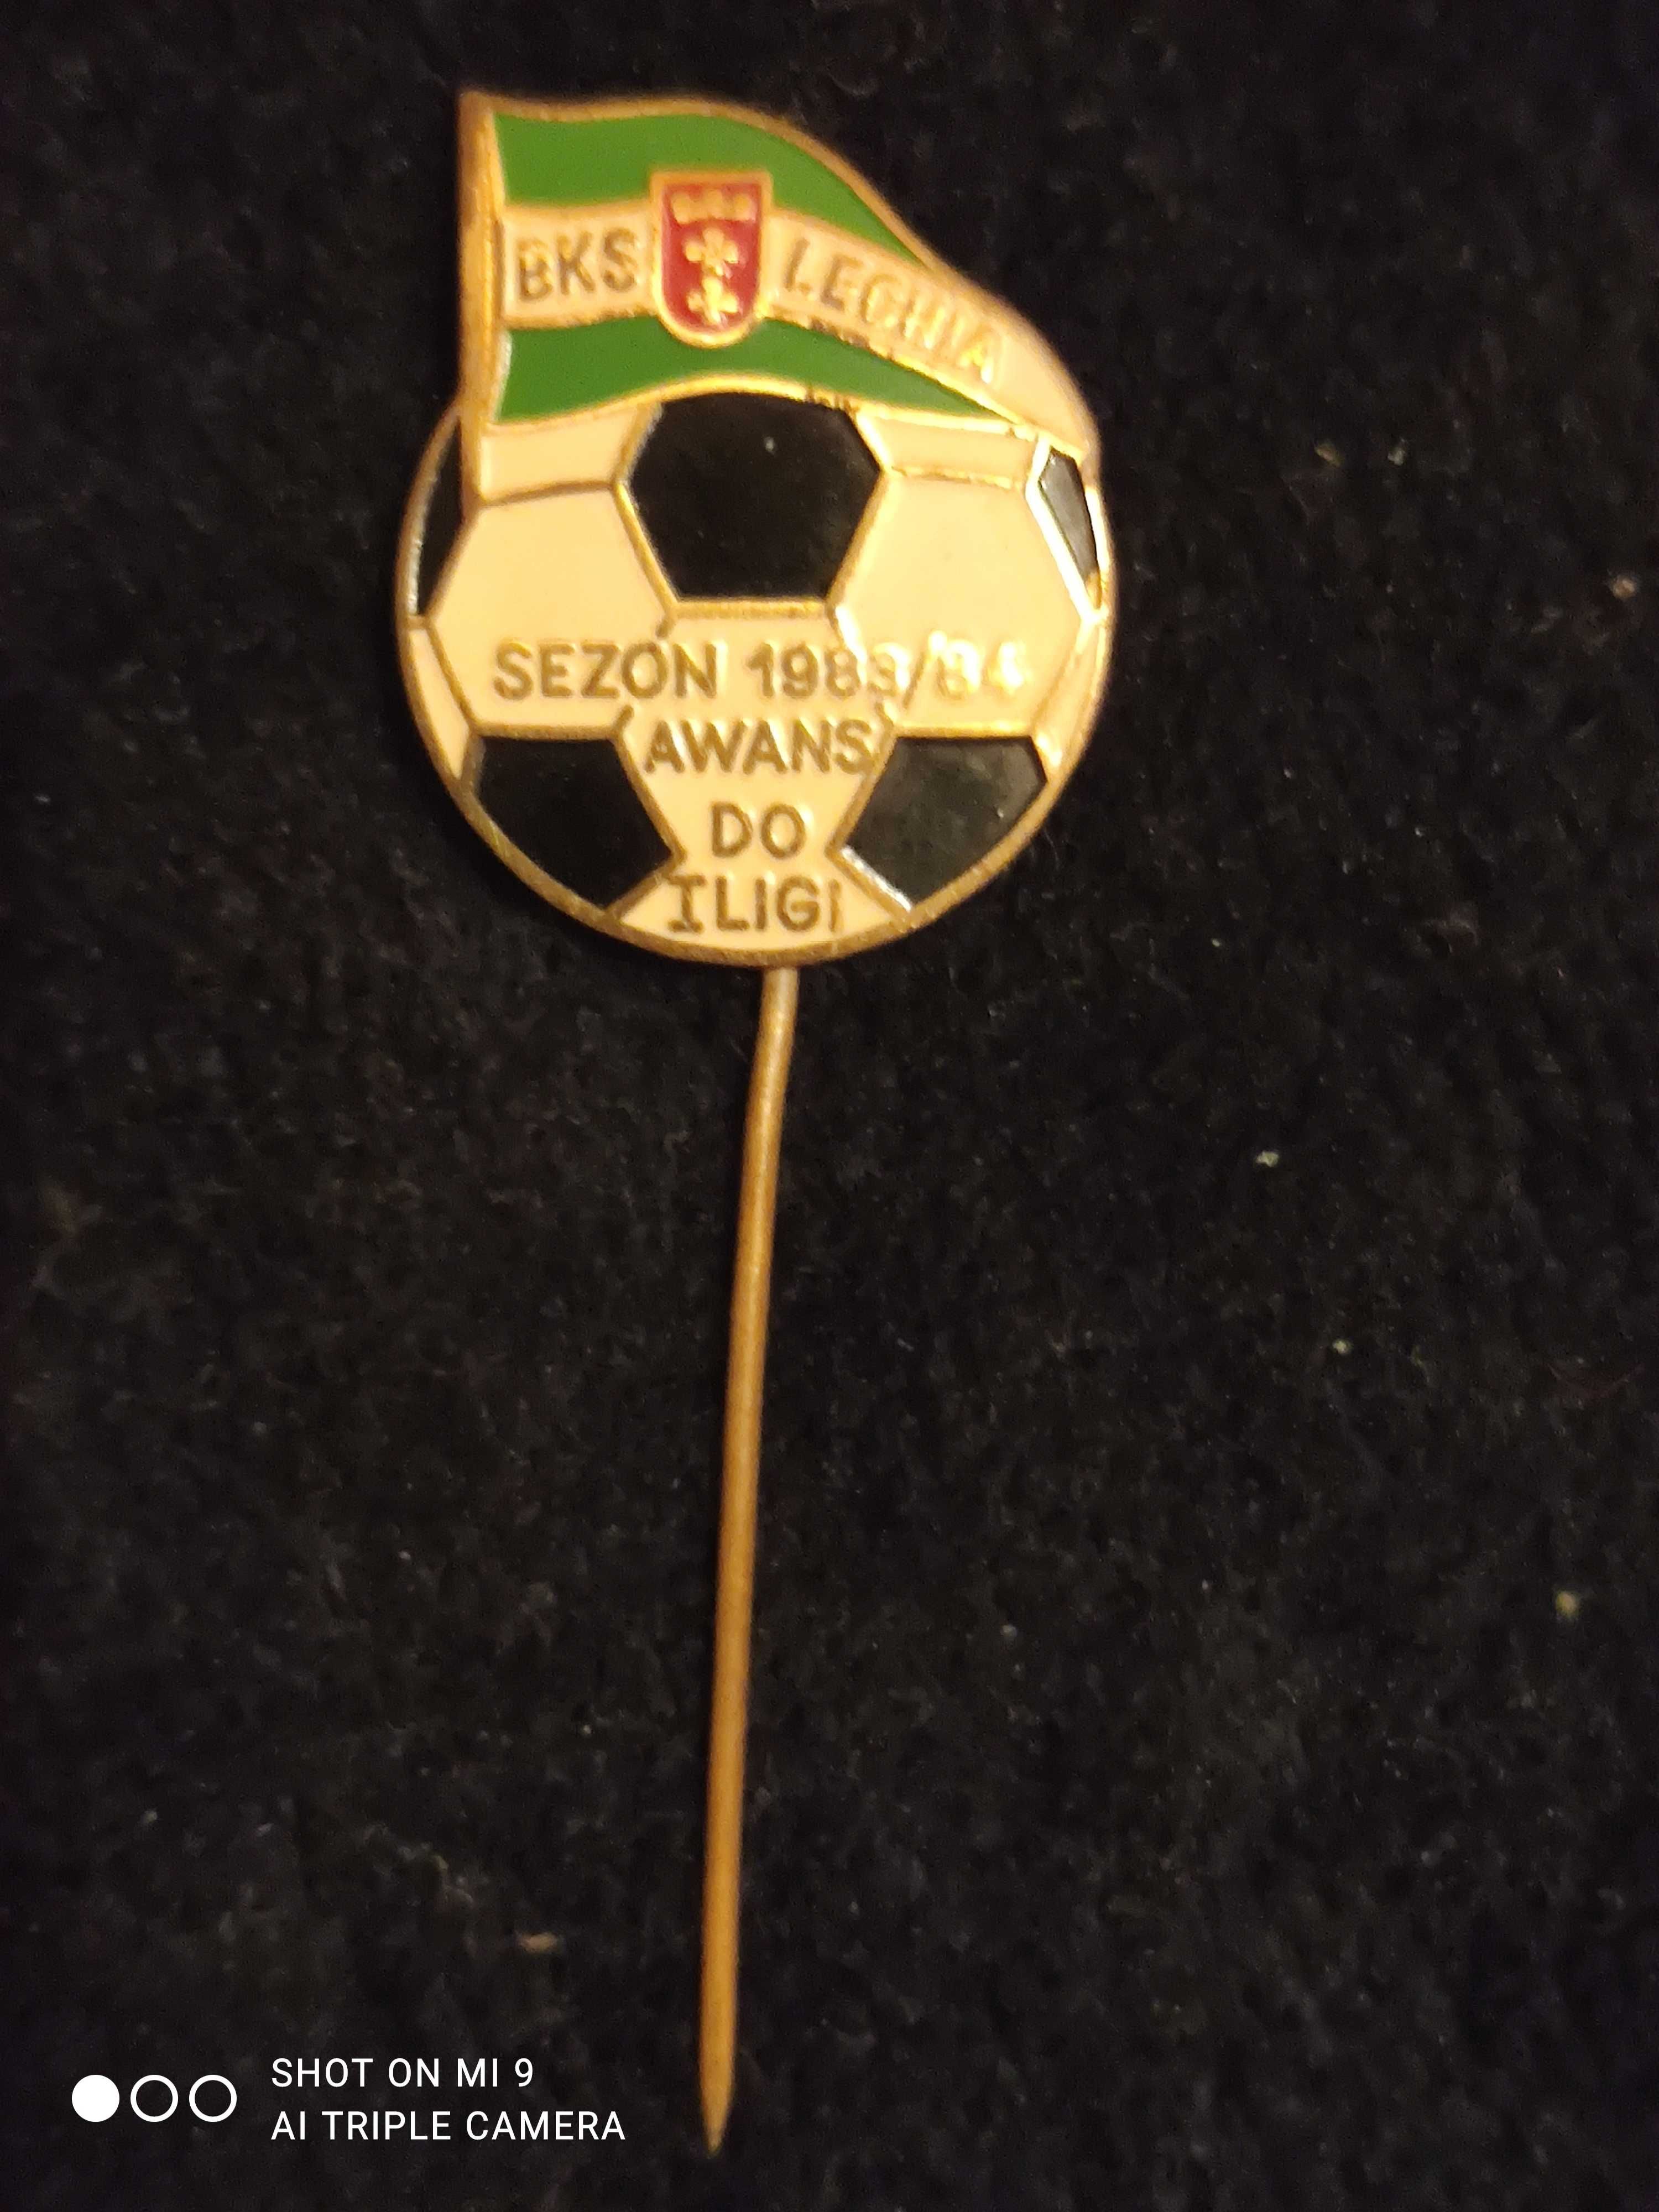 Wisła Cracovia Lechia Mistrzostwa Świata 1986 - odznaki z lat. 80